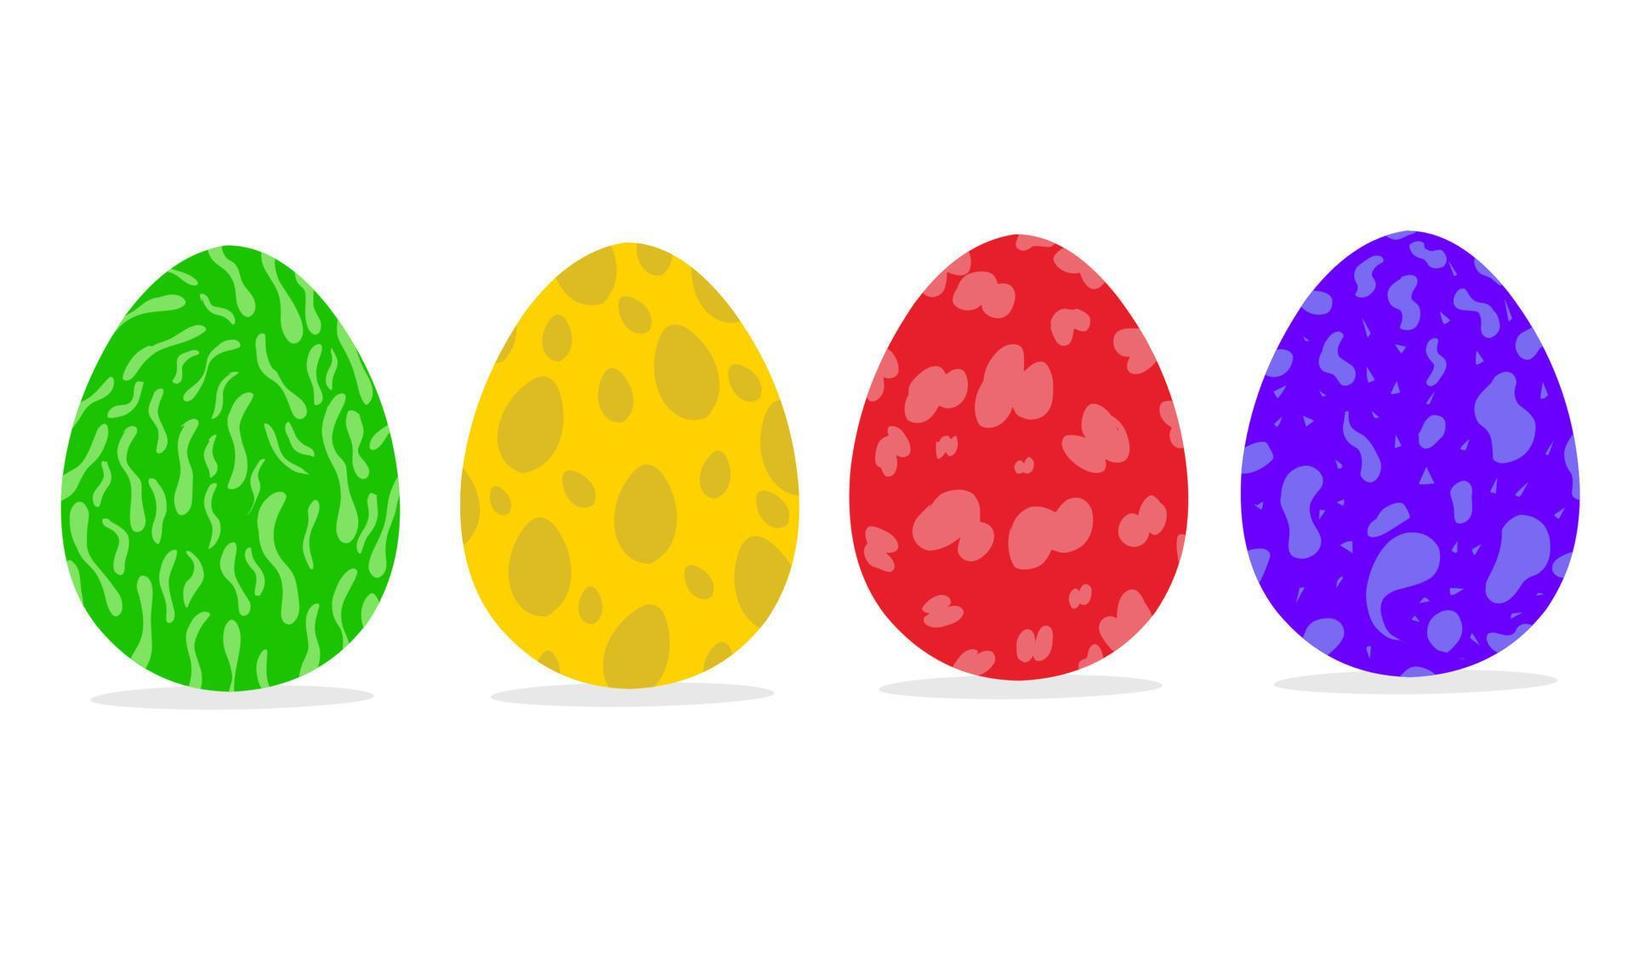 vektor uppsättning av dinosaurie ägg i annorlunda färger och mönster. gammal djur- ägg på en vit bakgrund. bra för gammal djur- logotyper och posters